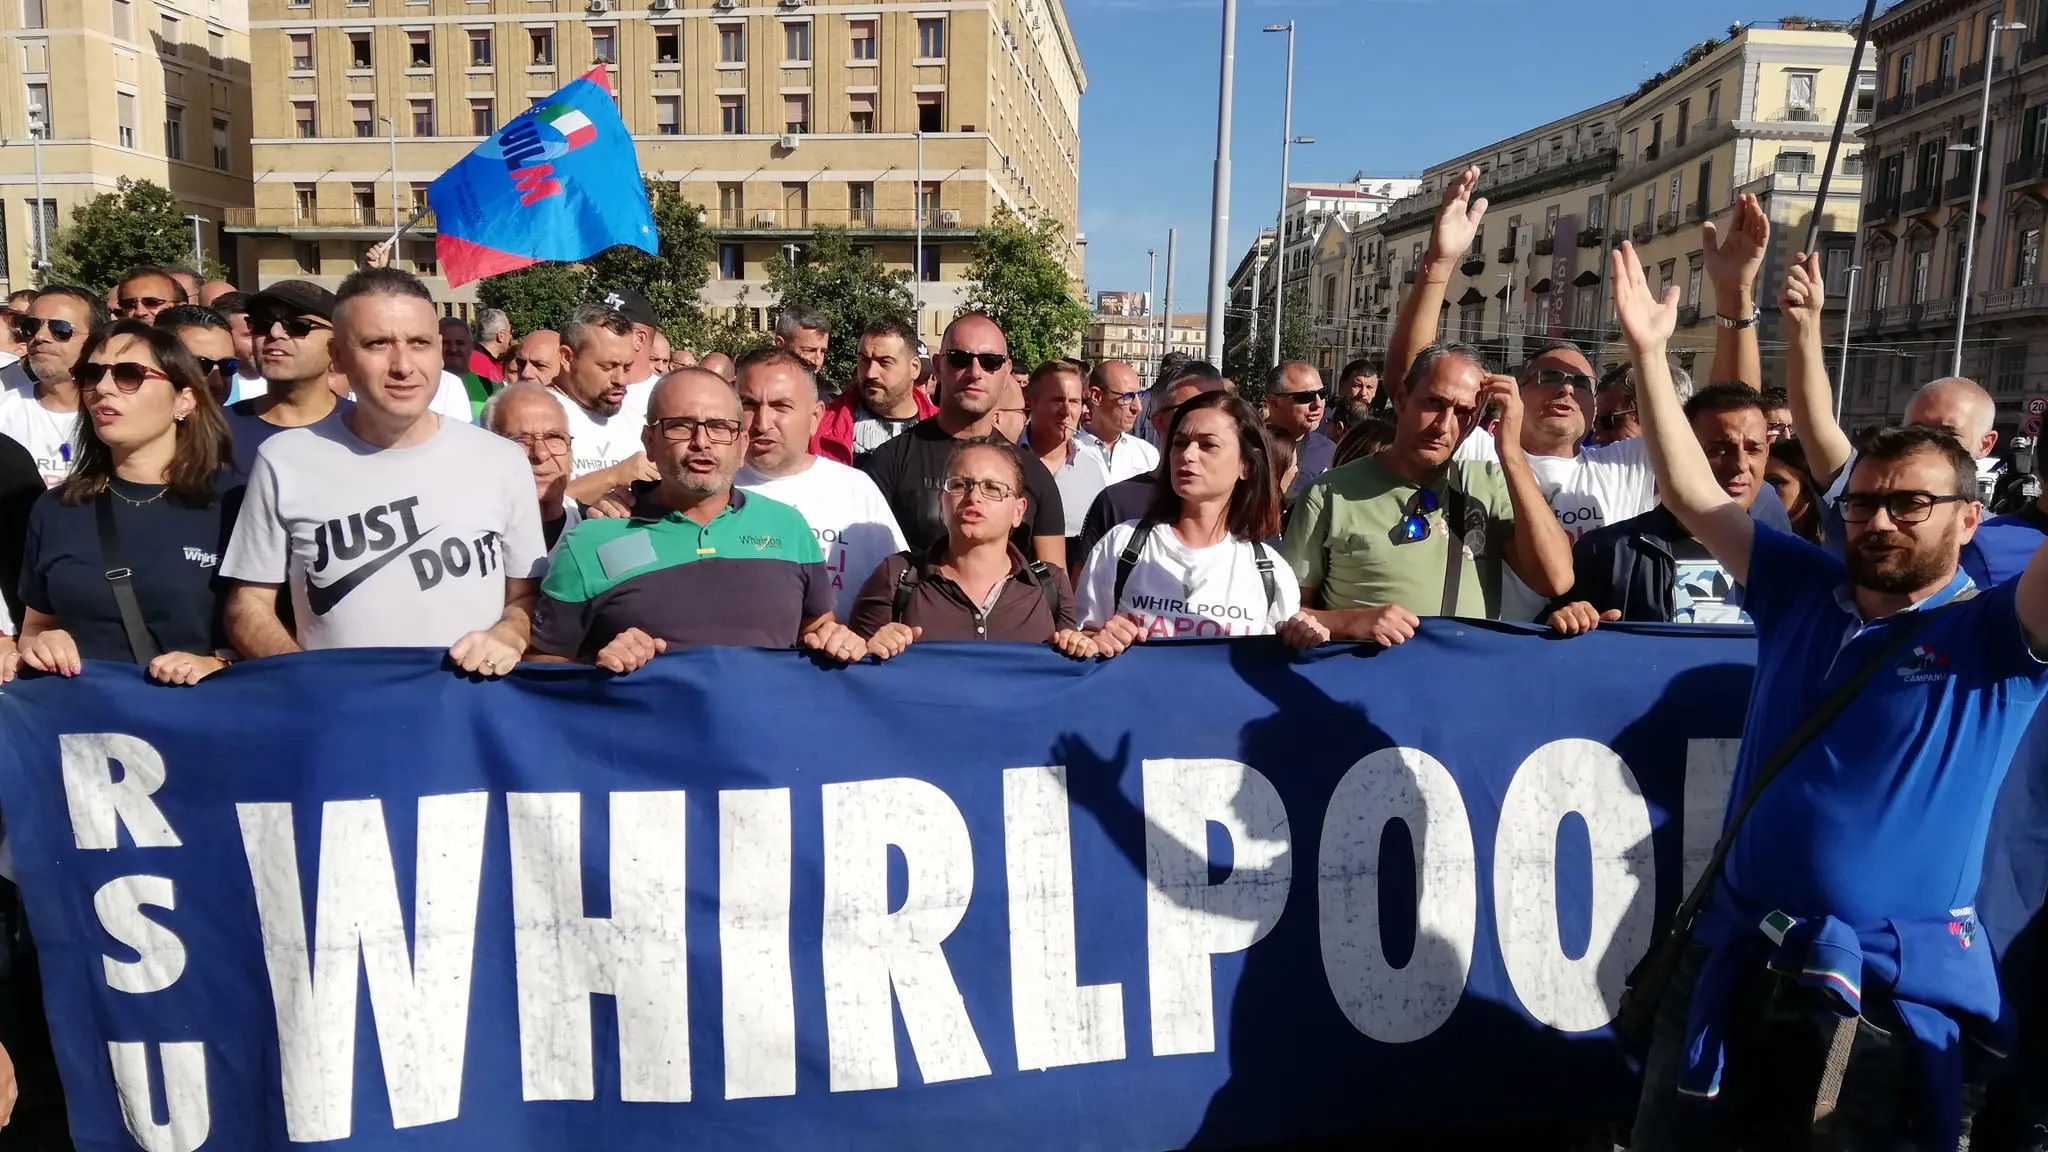 Napoli, 17 ottobre - La manifestazione degli operai Whirlpool